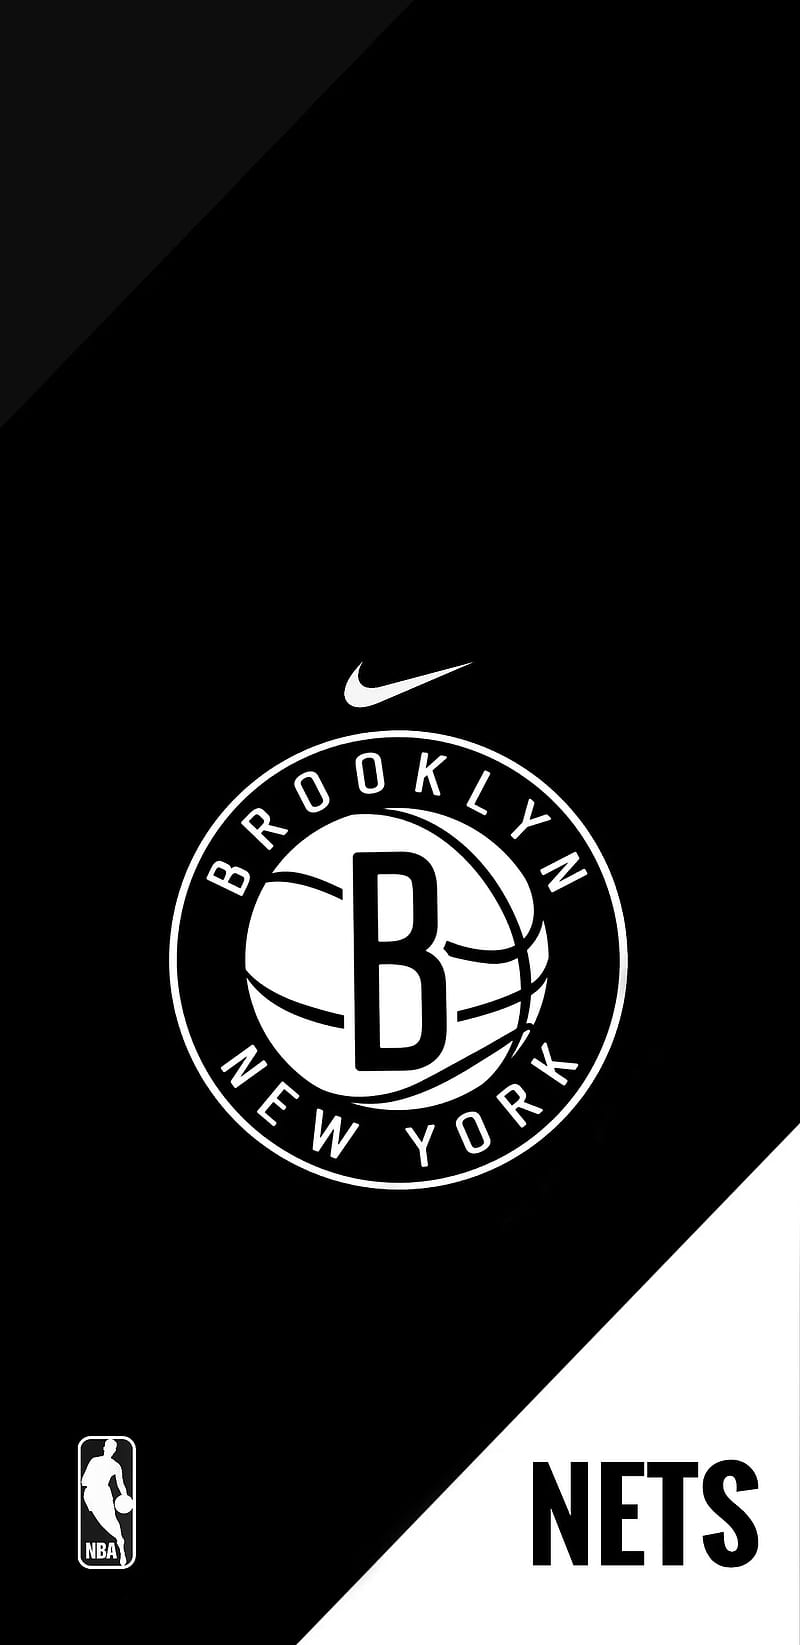 Brooklyn Nets Wallpaper  Basketball wallpaper Brooklyn nets Nba  wallpapers